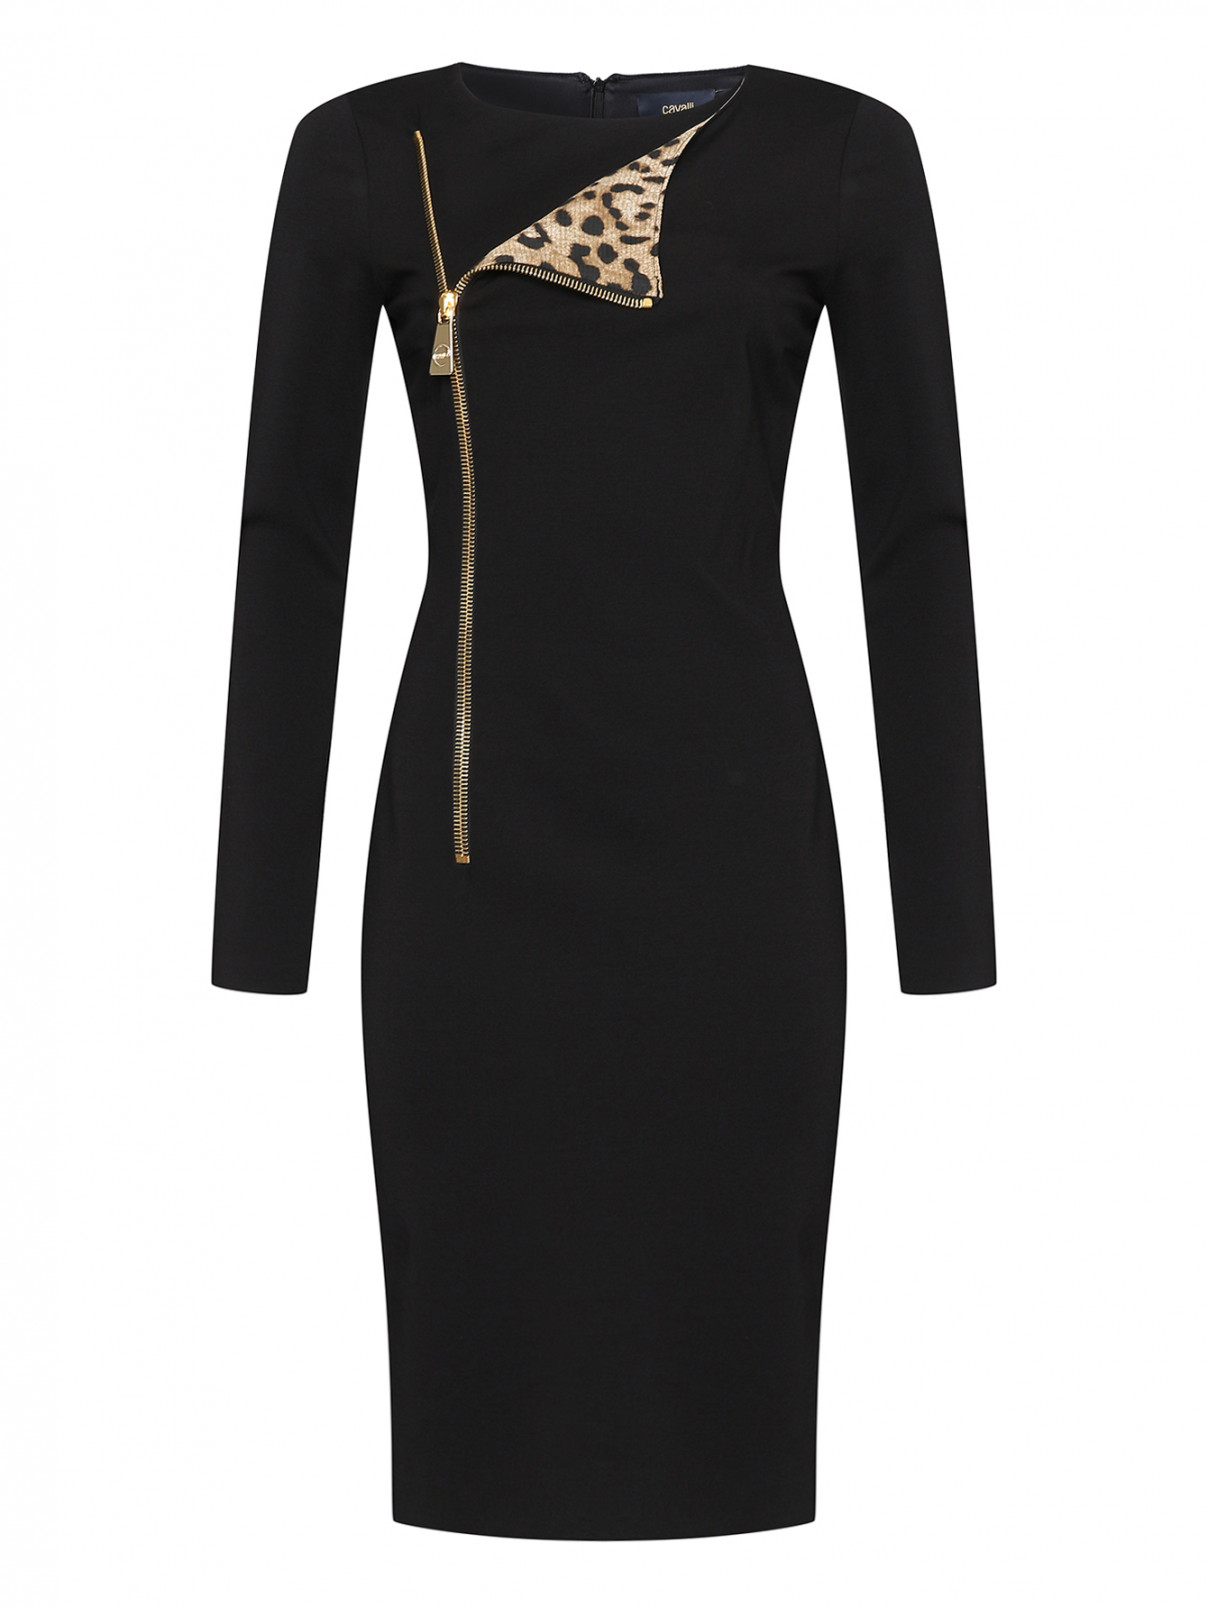 Платье трикотажное с декоративным элементом Cavalli class  –  Общий вид  – Цвет:  Черный